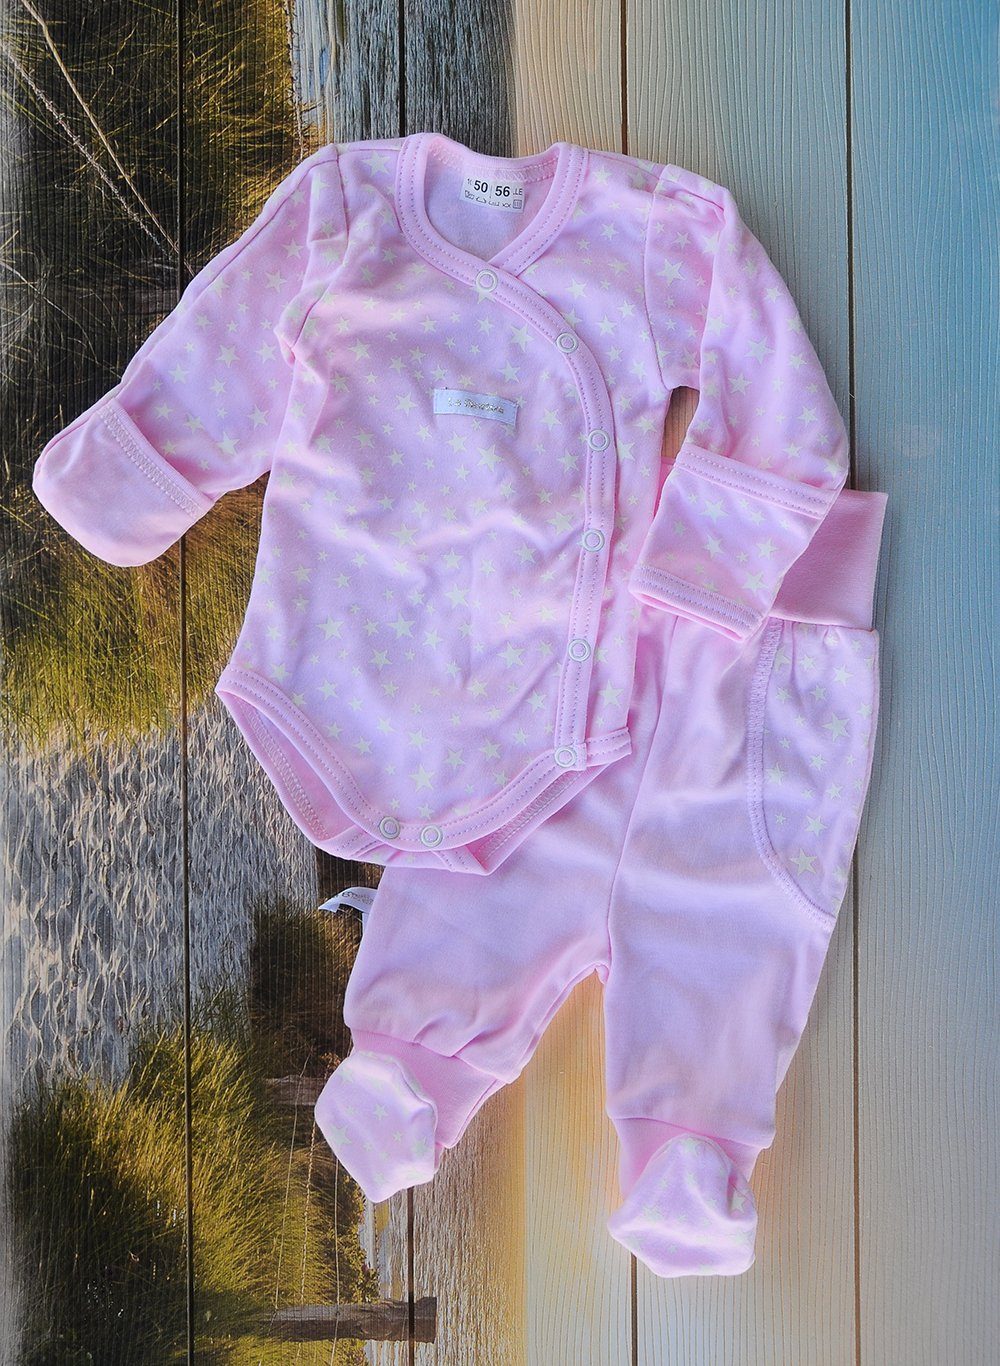 La Bortini Body & Hose Wickelbody Hose Baby Anzug 2tlg Set Body 44 50 56 62 68 74 80 86 aus reiner Baumwolle, mit Kratzschutz